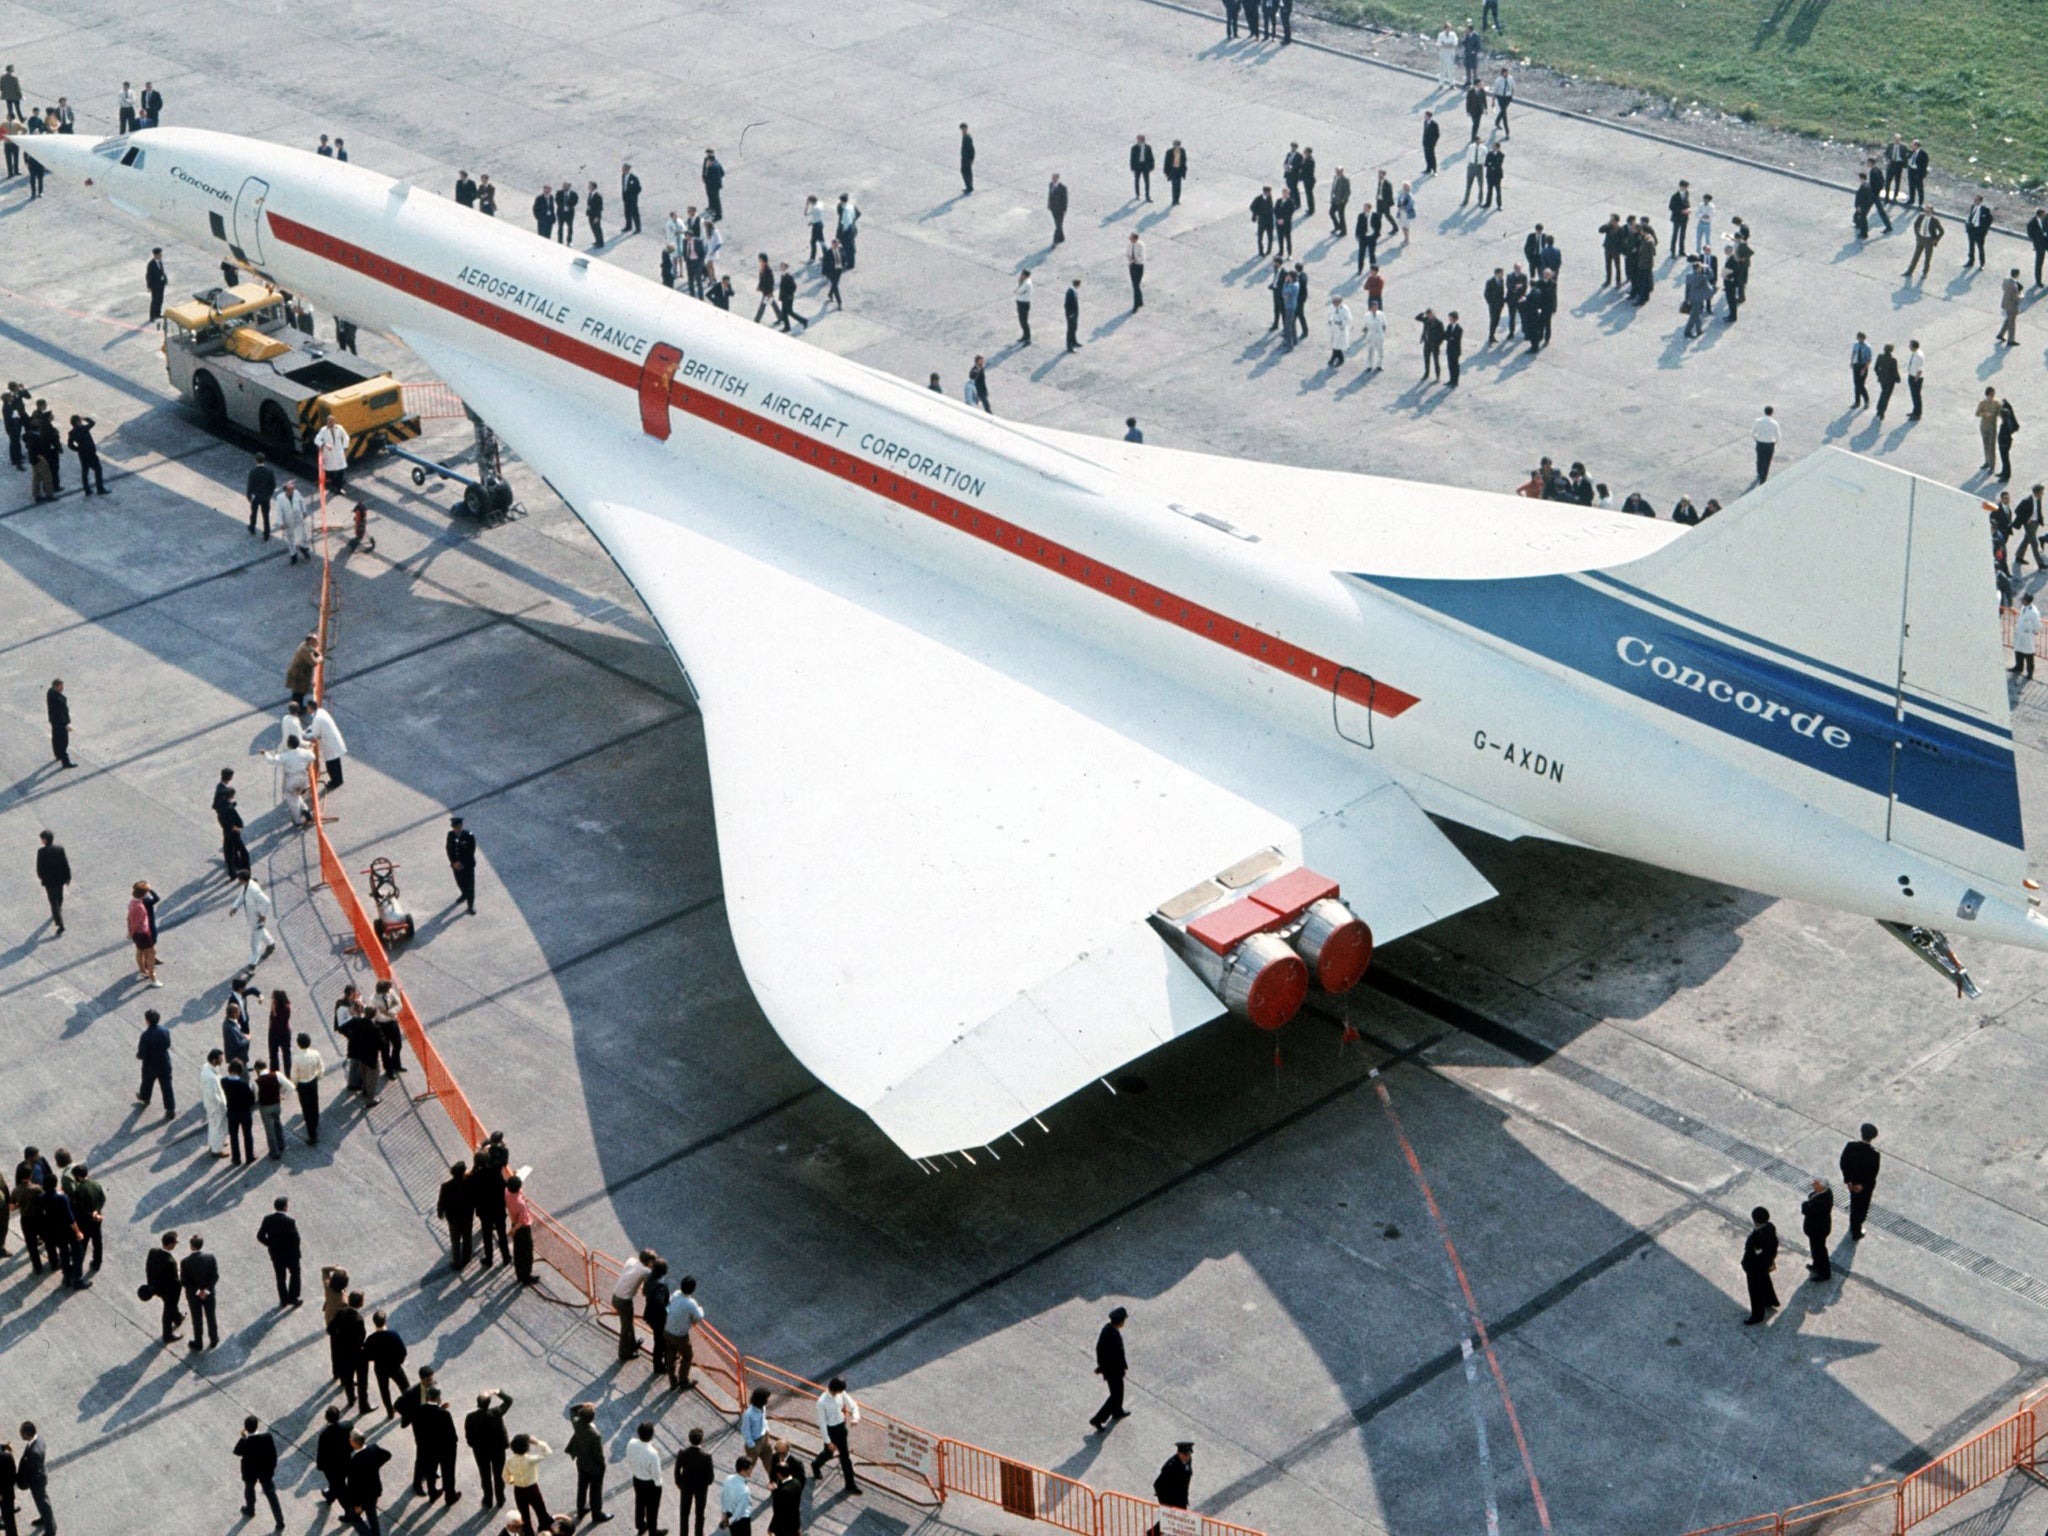 Hãng Concorde chịu ảnh hưởng nặng nề từ sự việc 11/9 và vĩnh viễn ngừng hoạt động từ cuối năm 2003